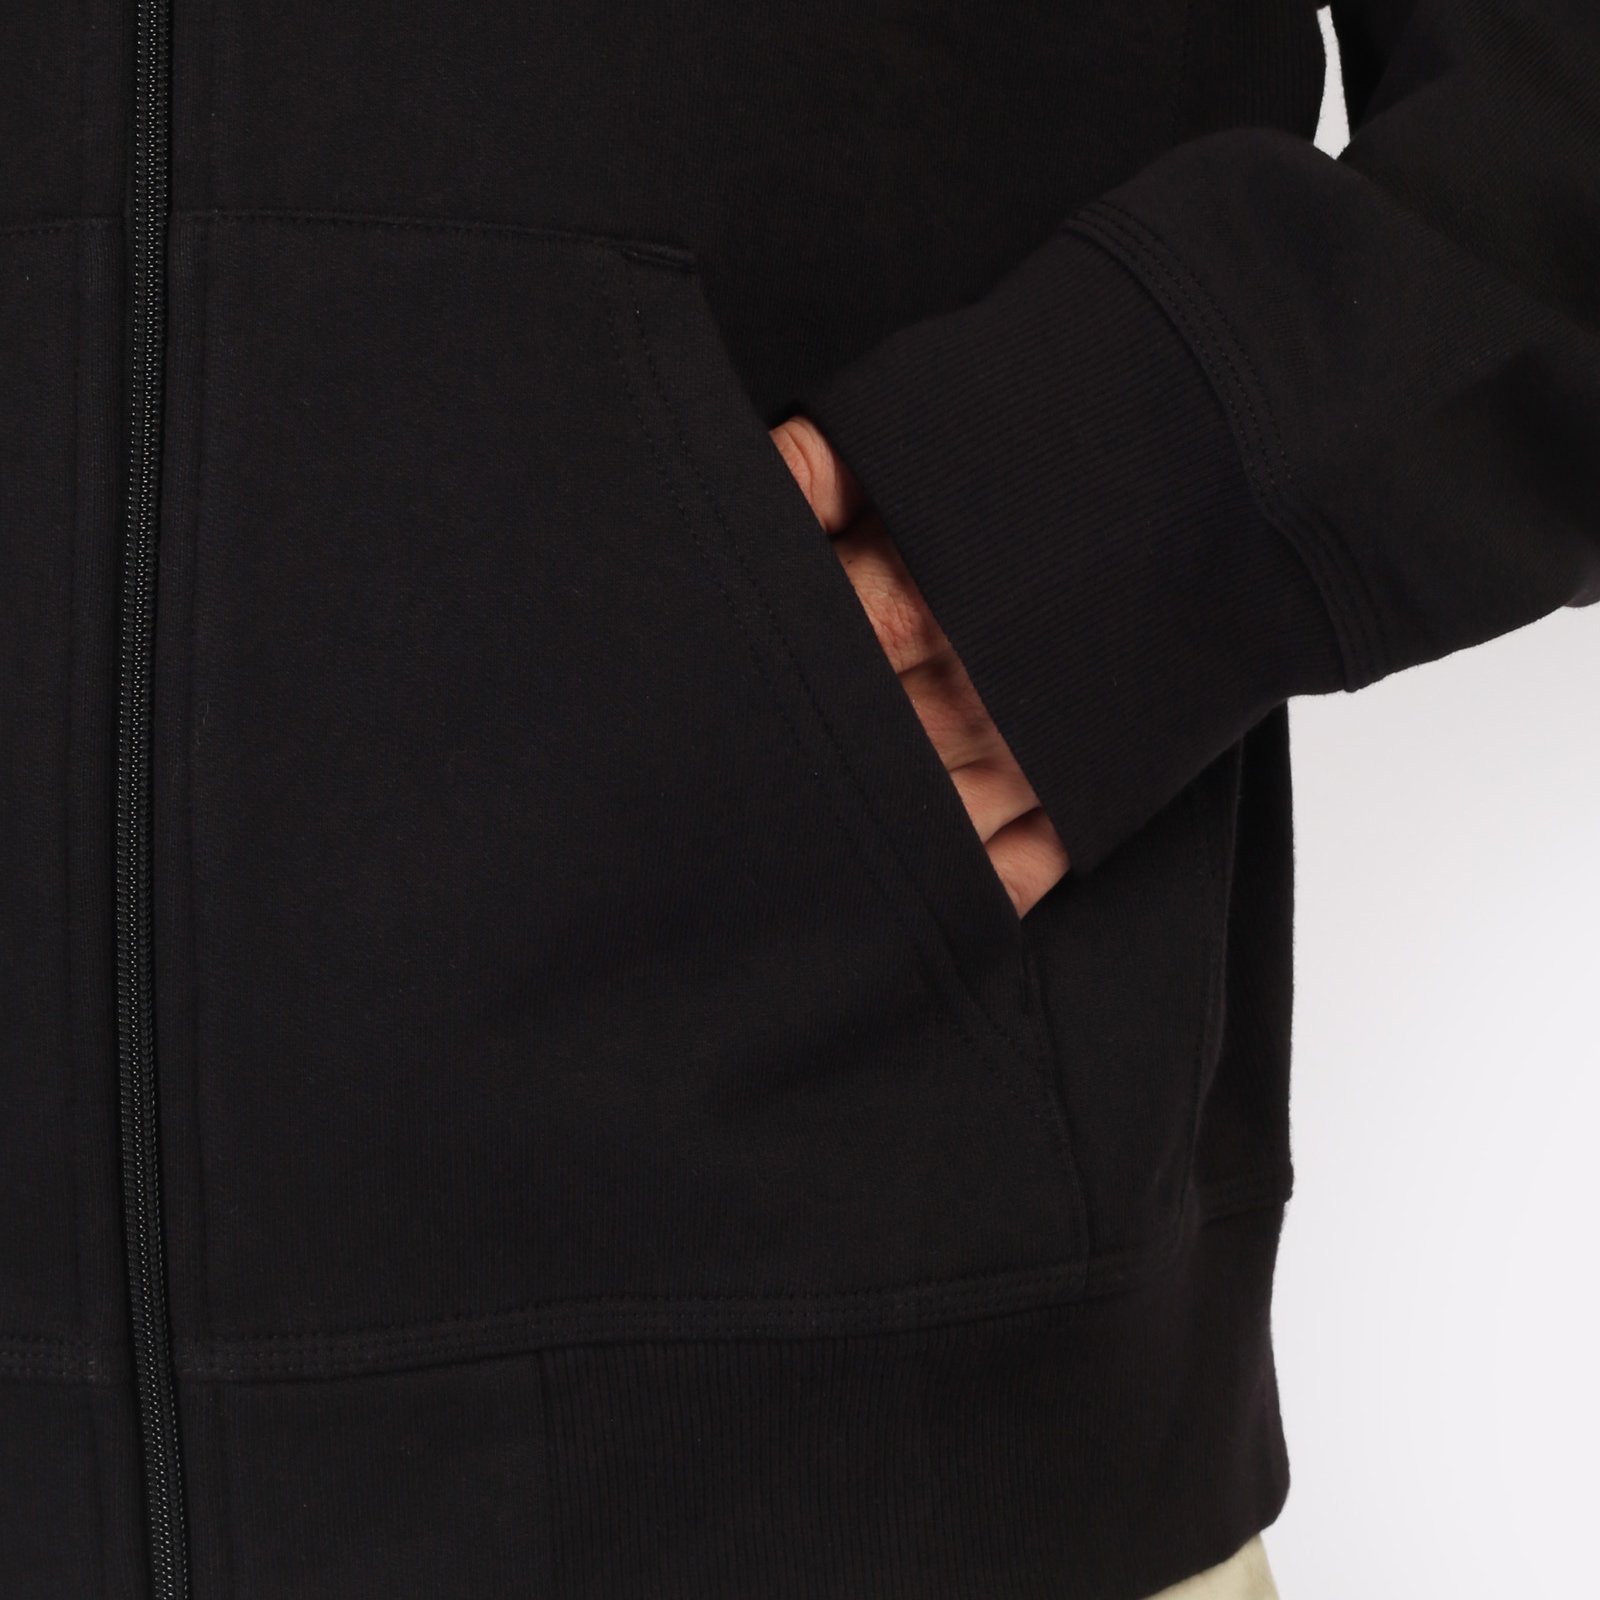 мужская черная толстовка Carhartt WIP Hooded American Script Jacket I033063-black - цена, описание, фото 6